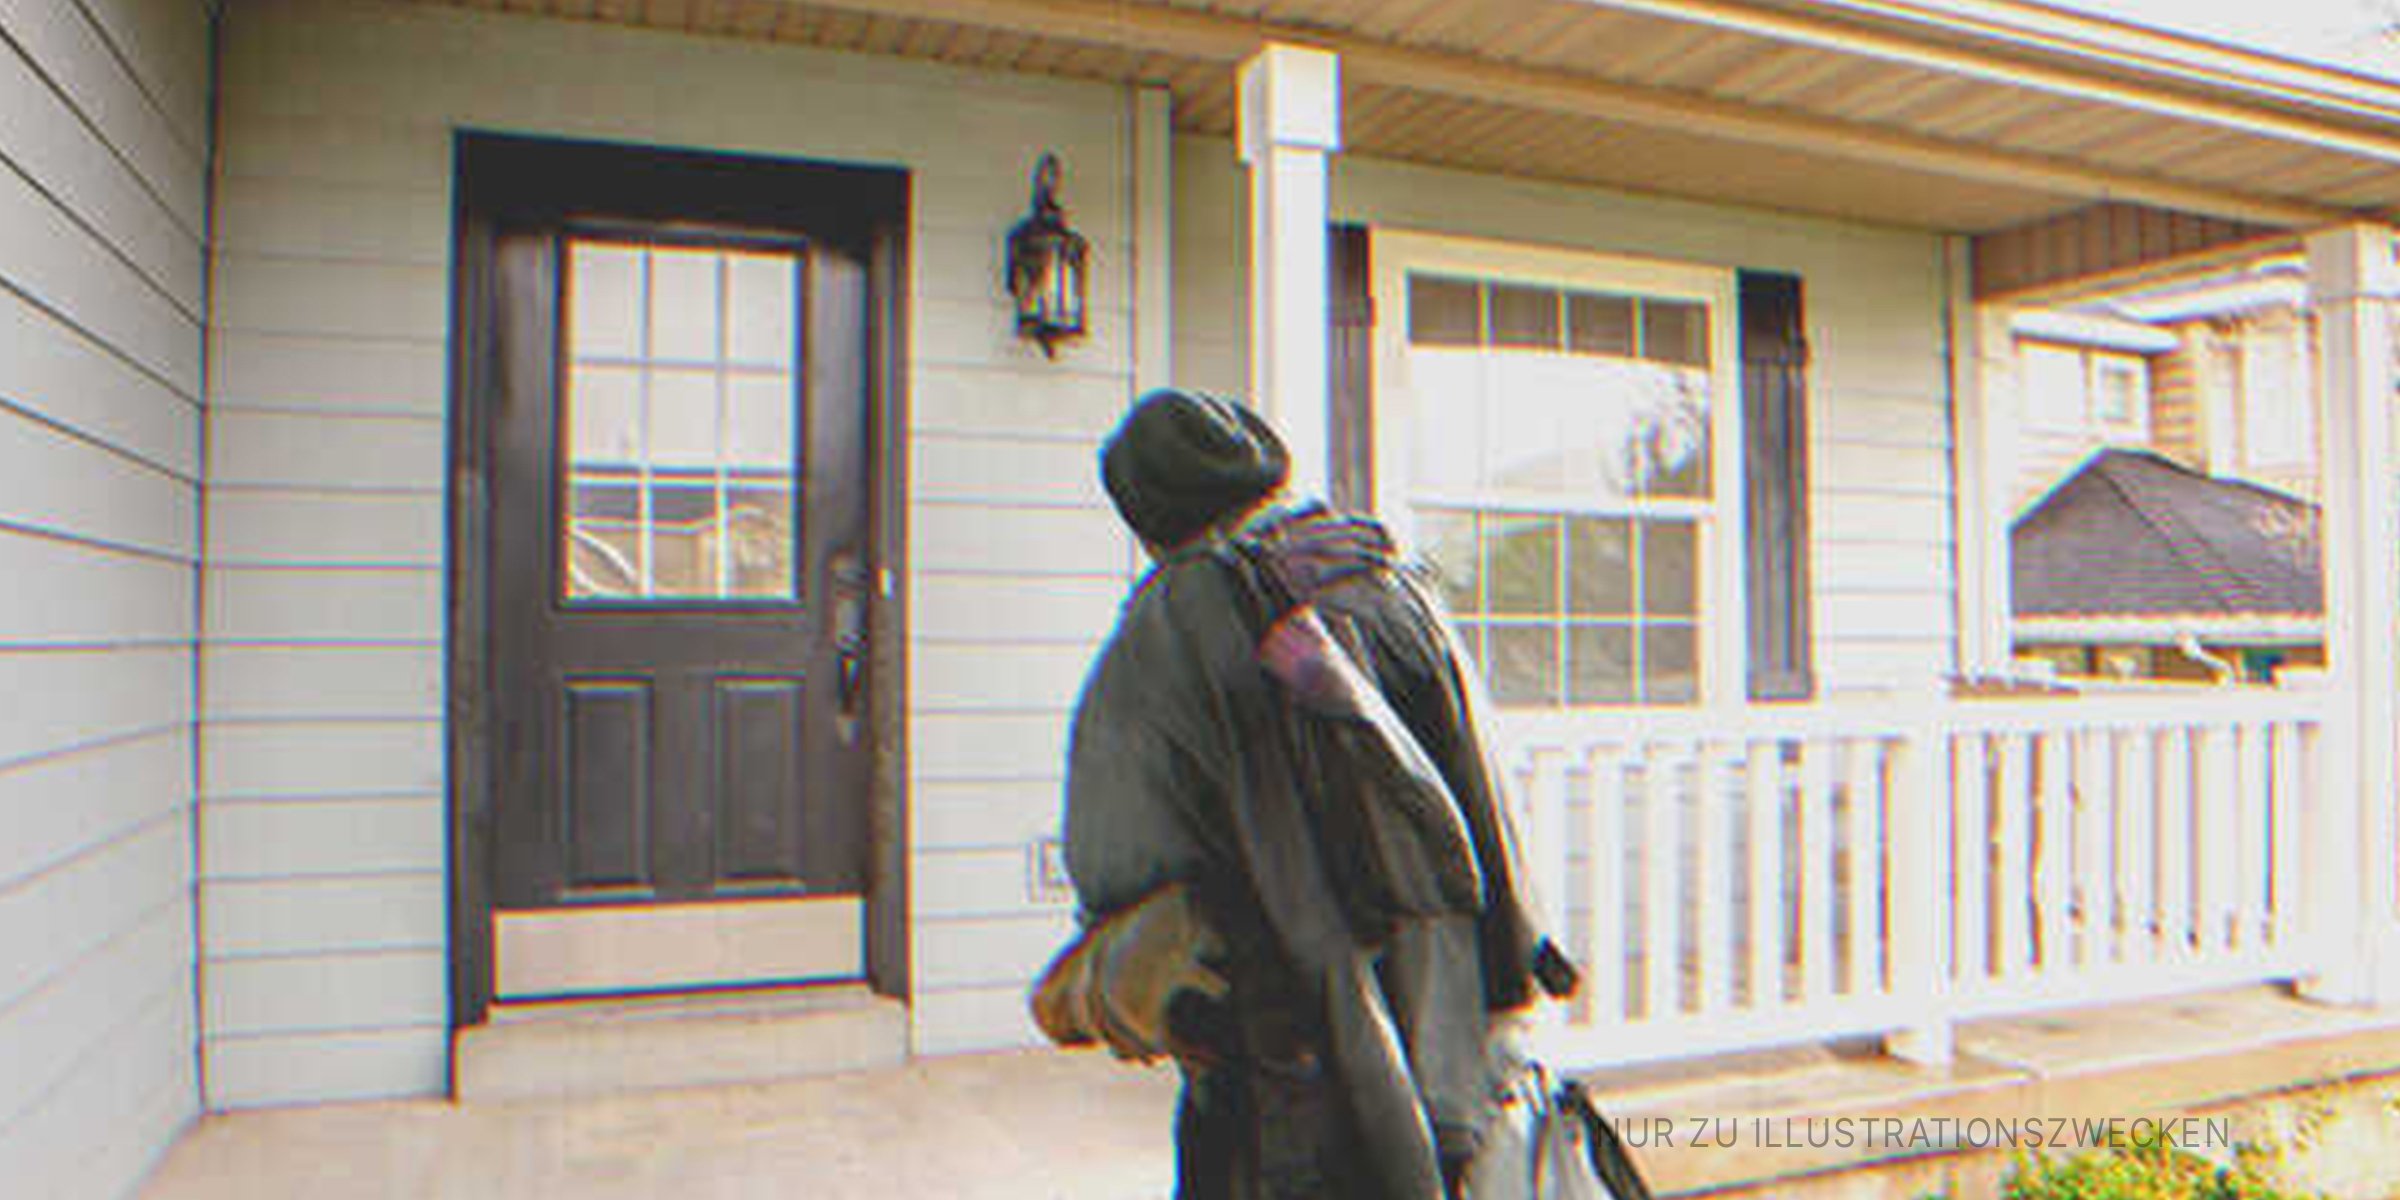 Ein obdachloser Mann auf der Veranda eines Hauses | Quelle: Shutterstock